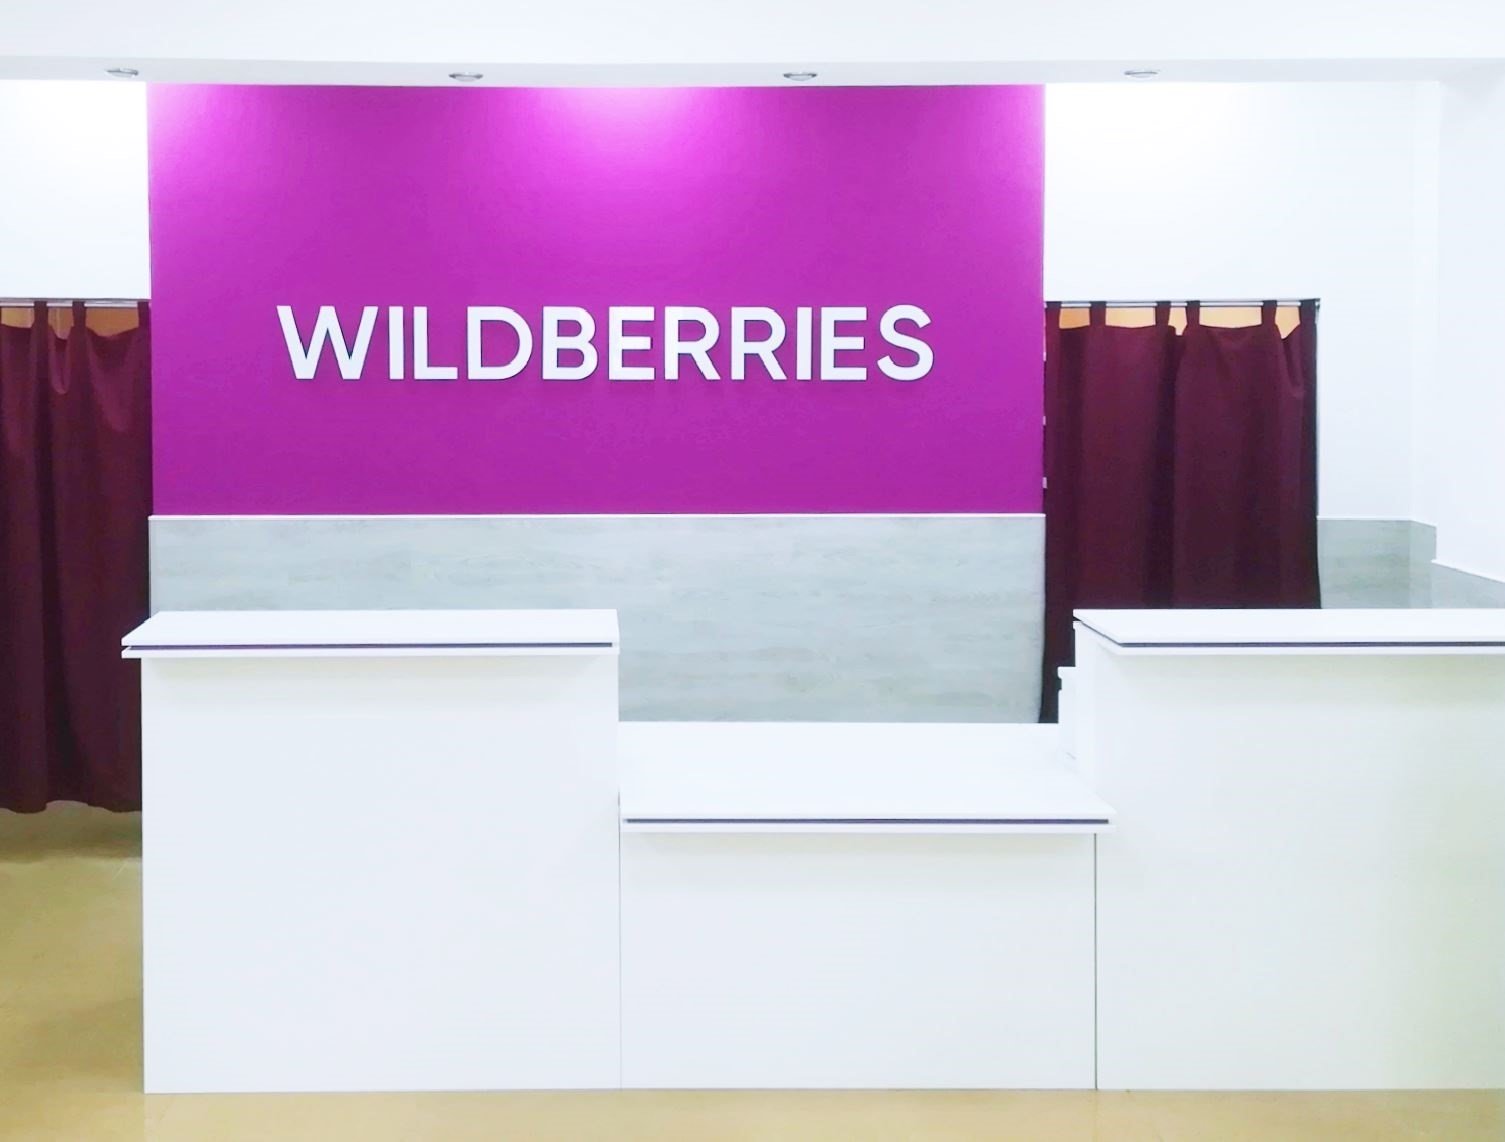 Из-за чего возникли проблемы в работе Wildberries?